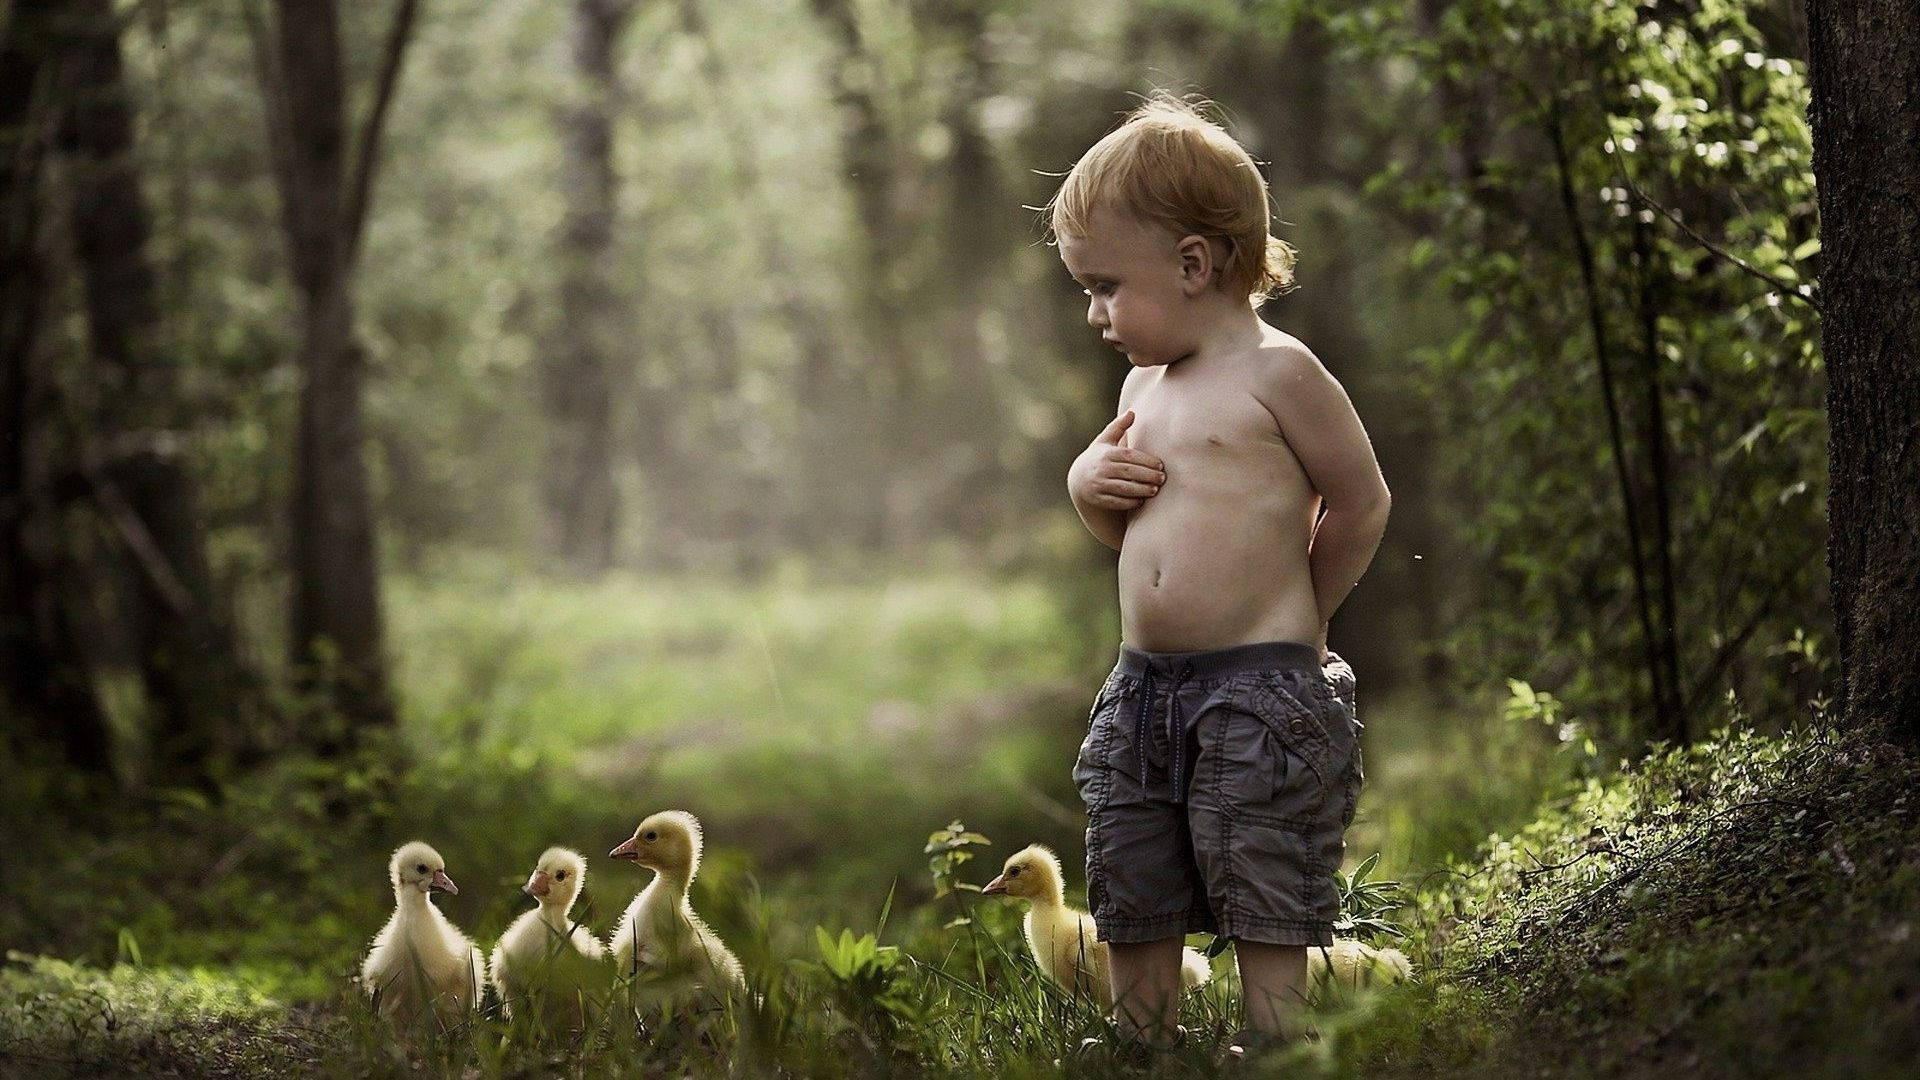 Baby Ducks In Woods Wallpaper